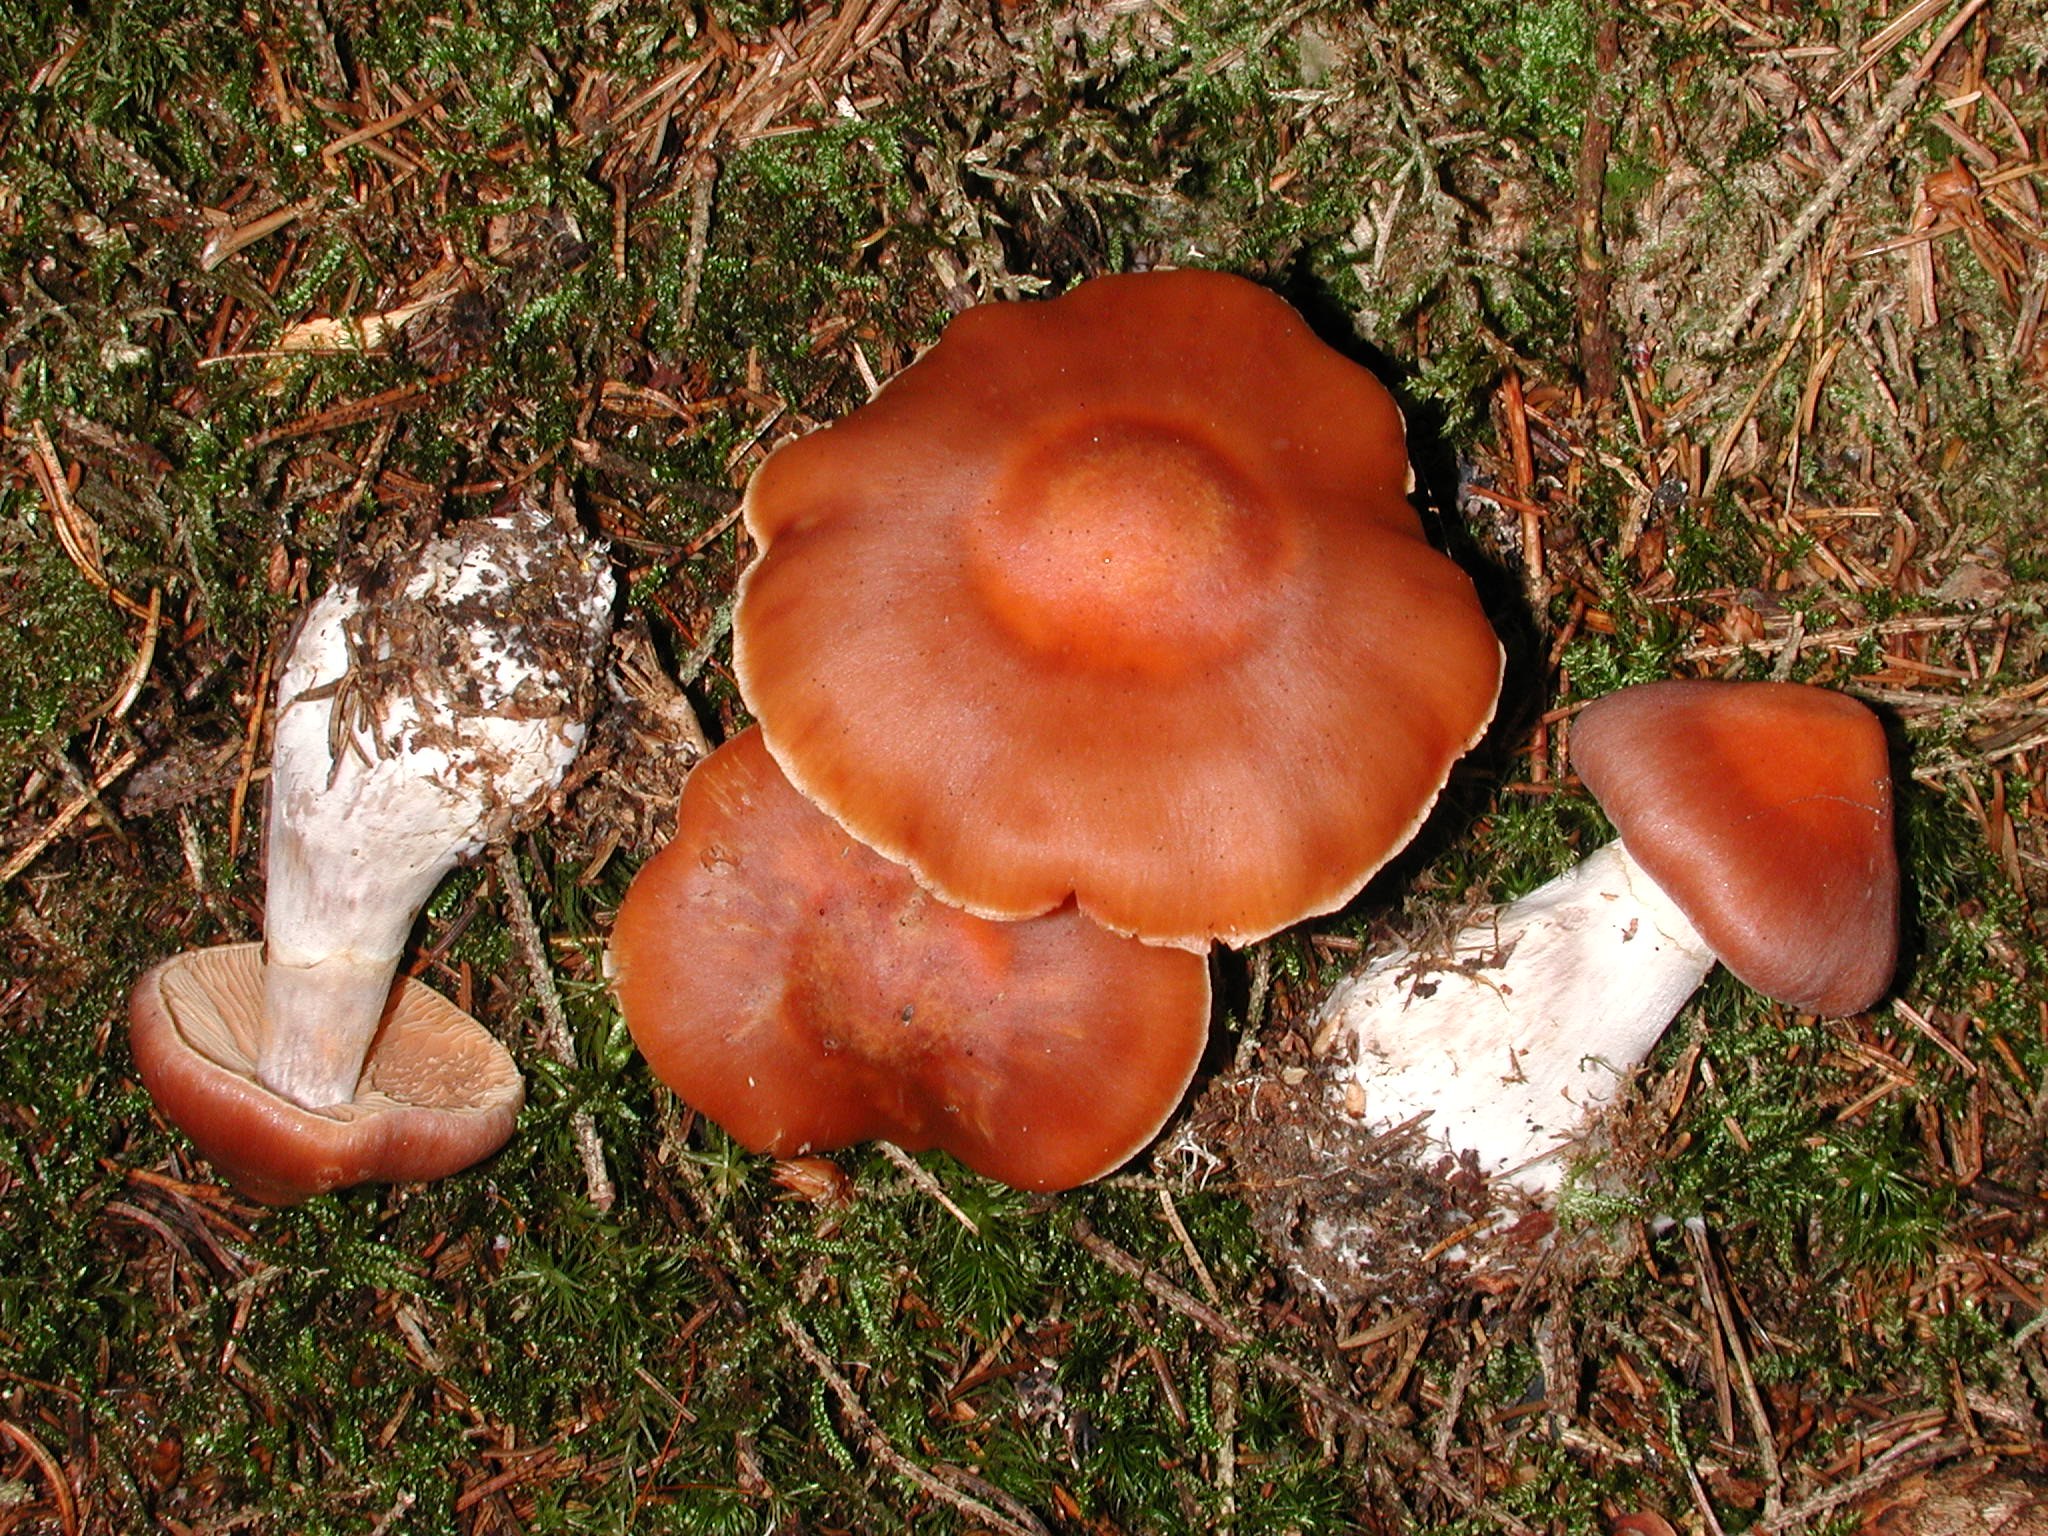 Паутинник красивейший - фото и описание гриба, как выглядит и где растет